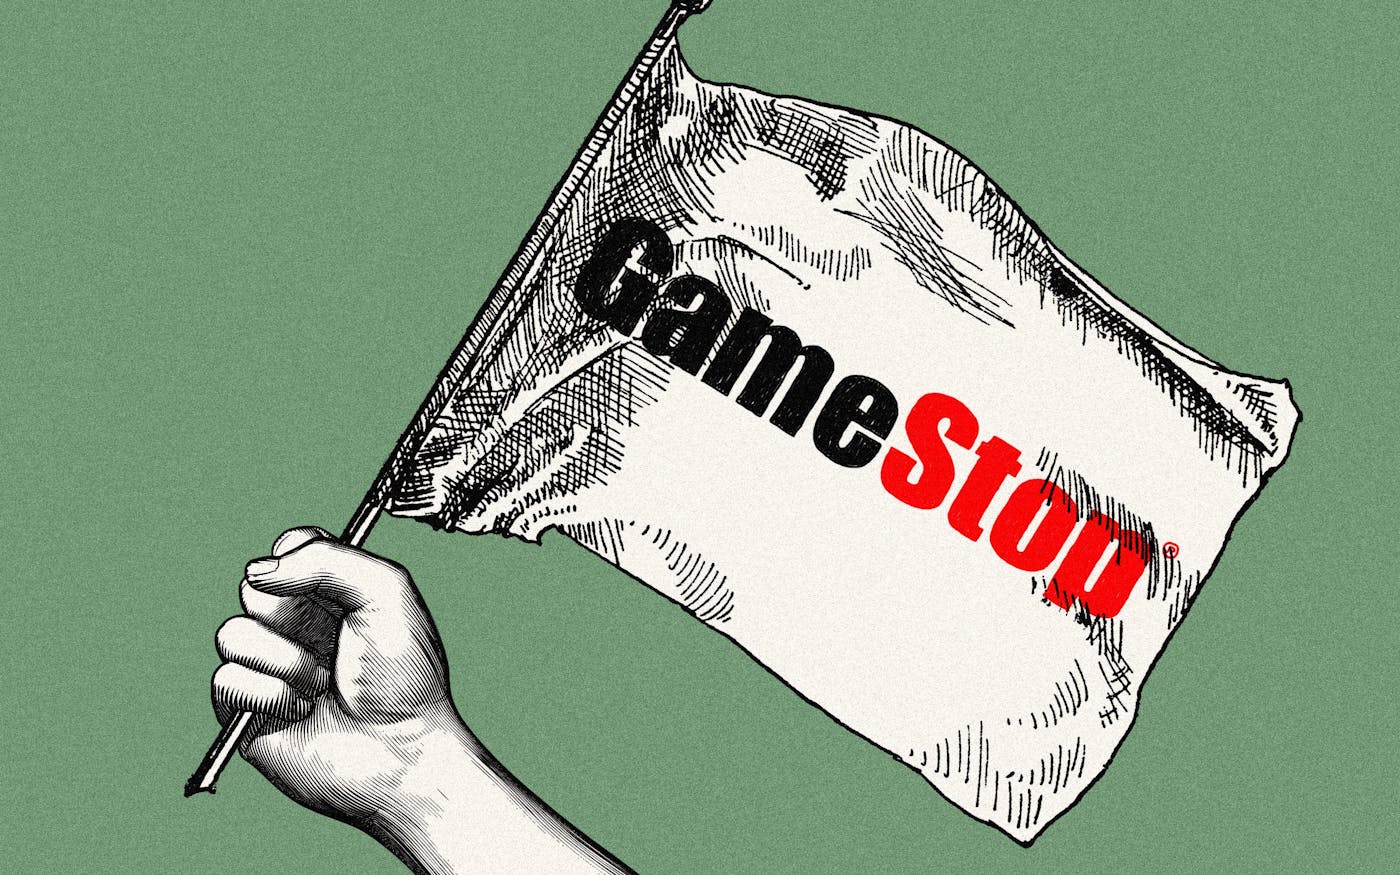 Jordan Belfort Goes Full 'Wolf of Wall Street' on the GameStop Saga